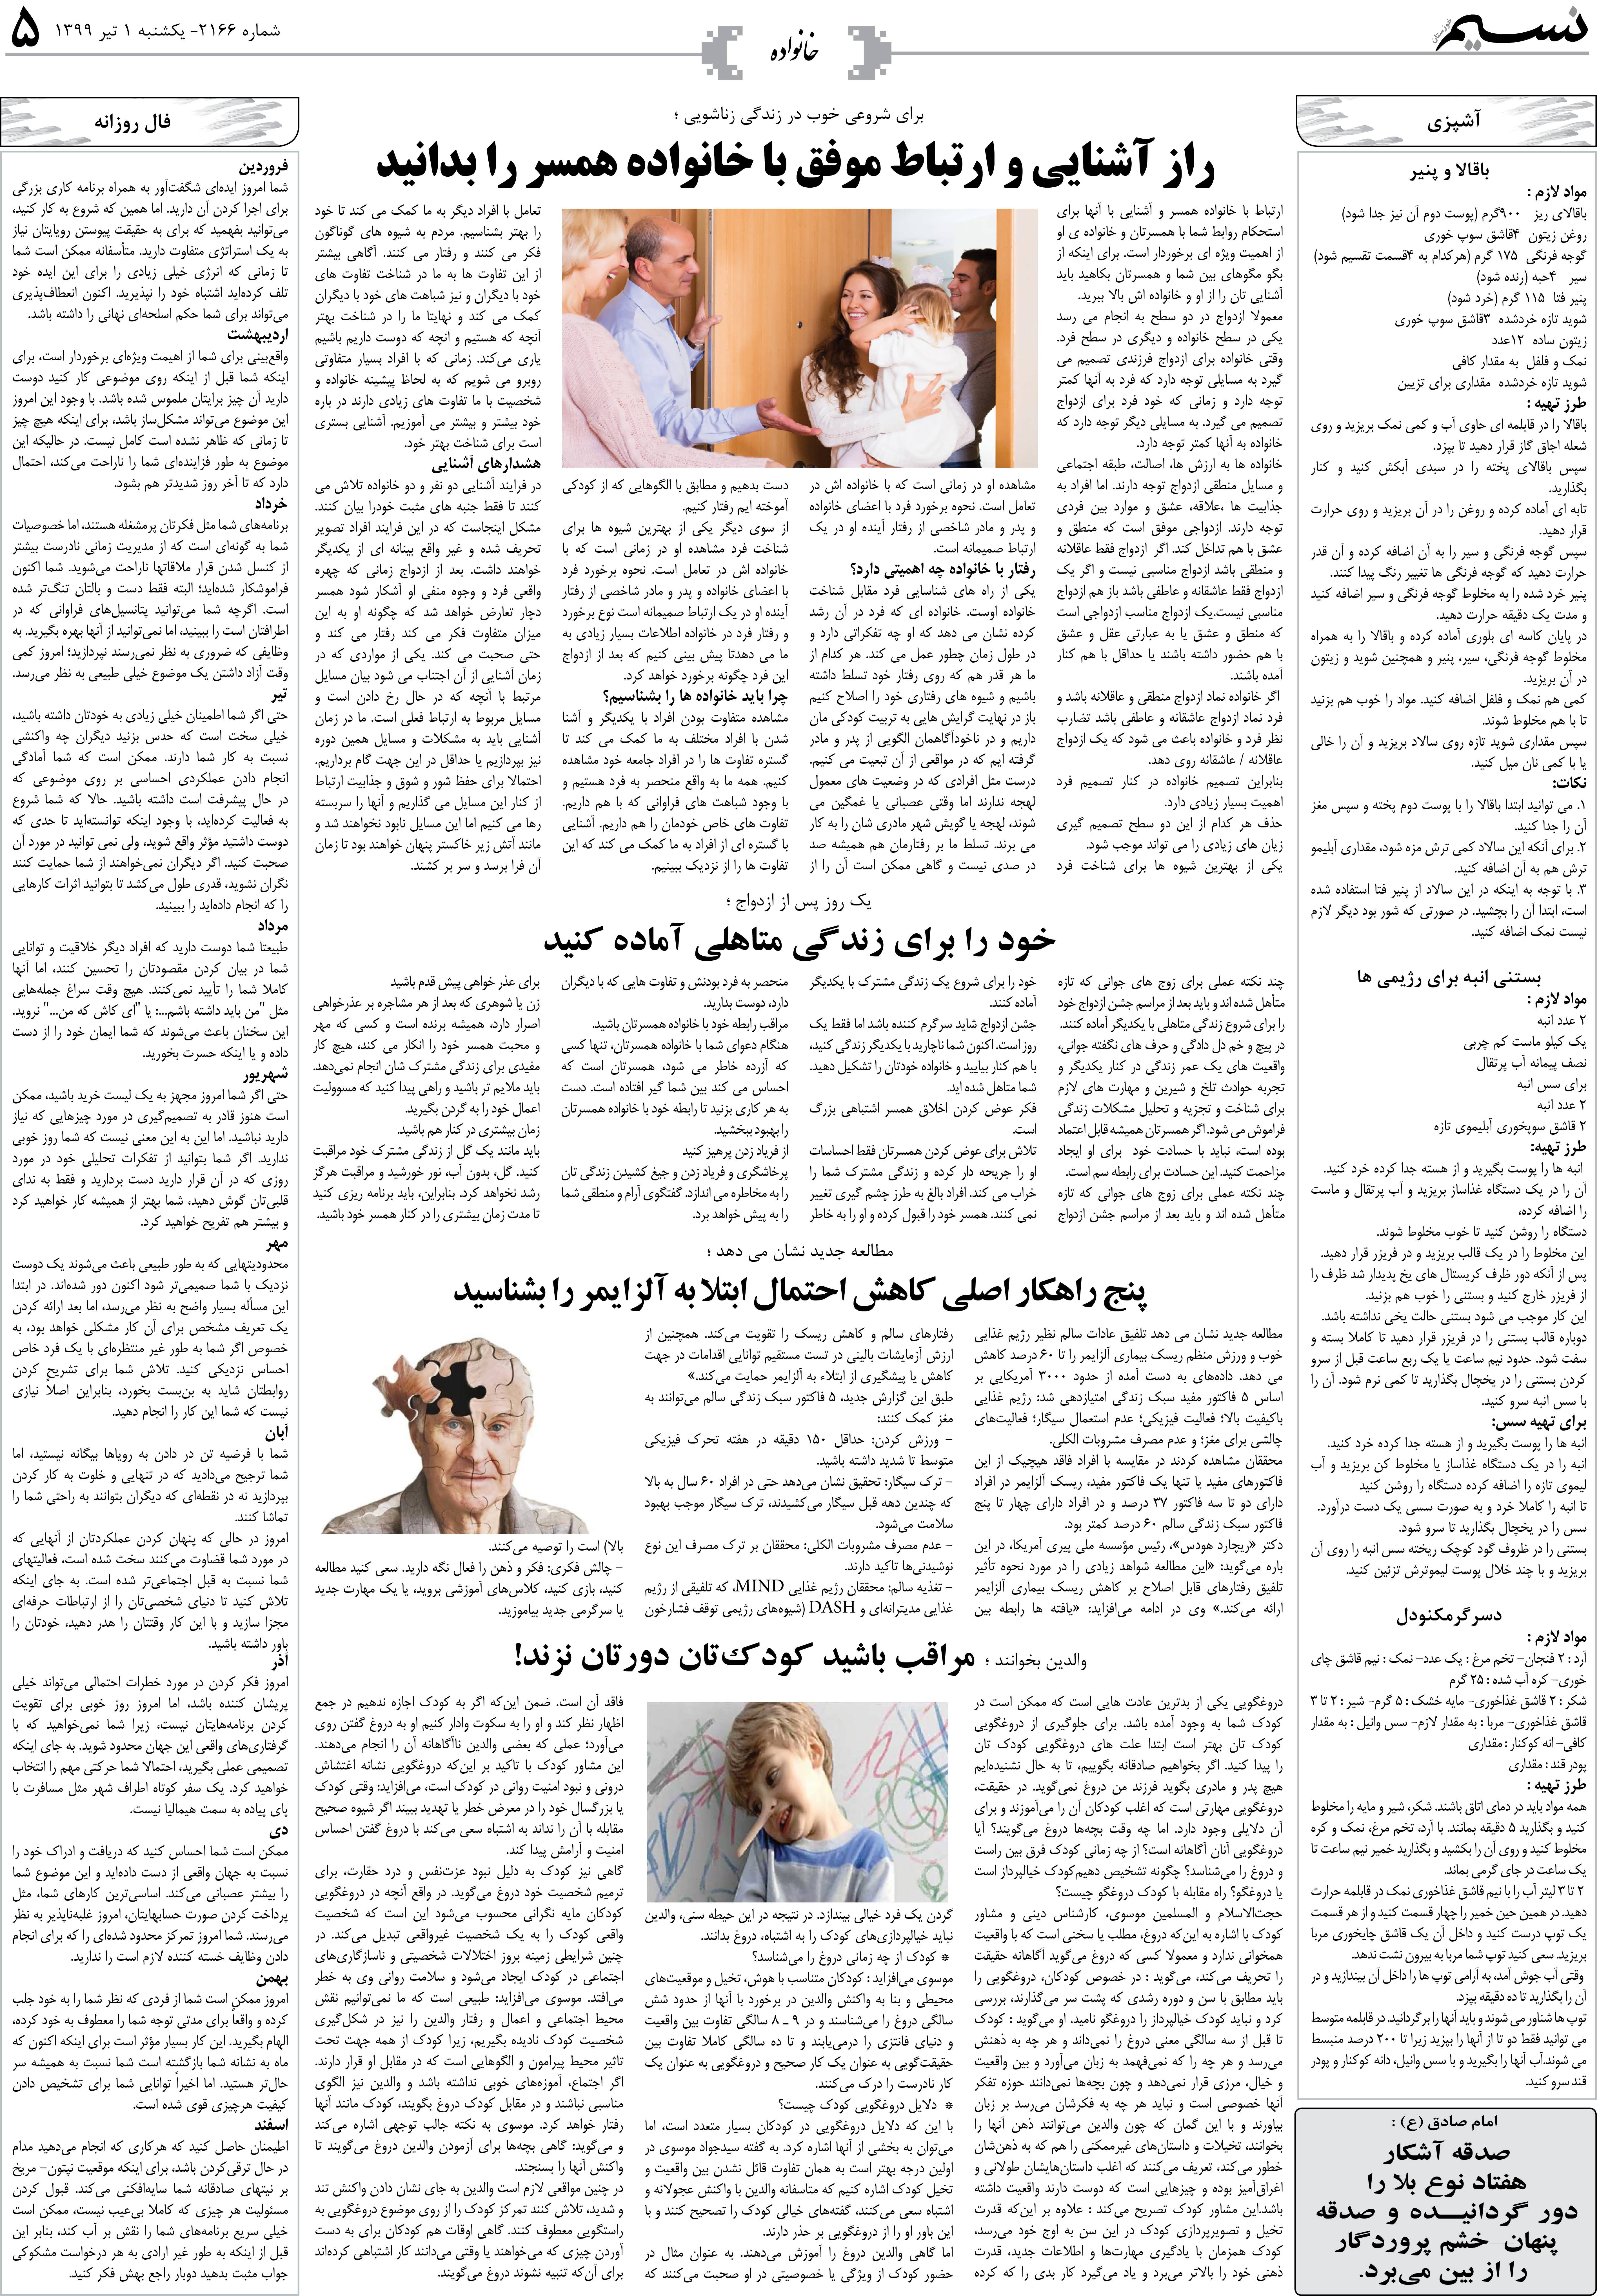 صفحه خانواده روزنامه نسیم شماره 2166